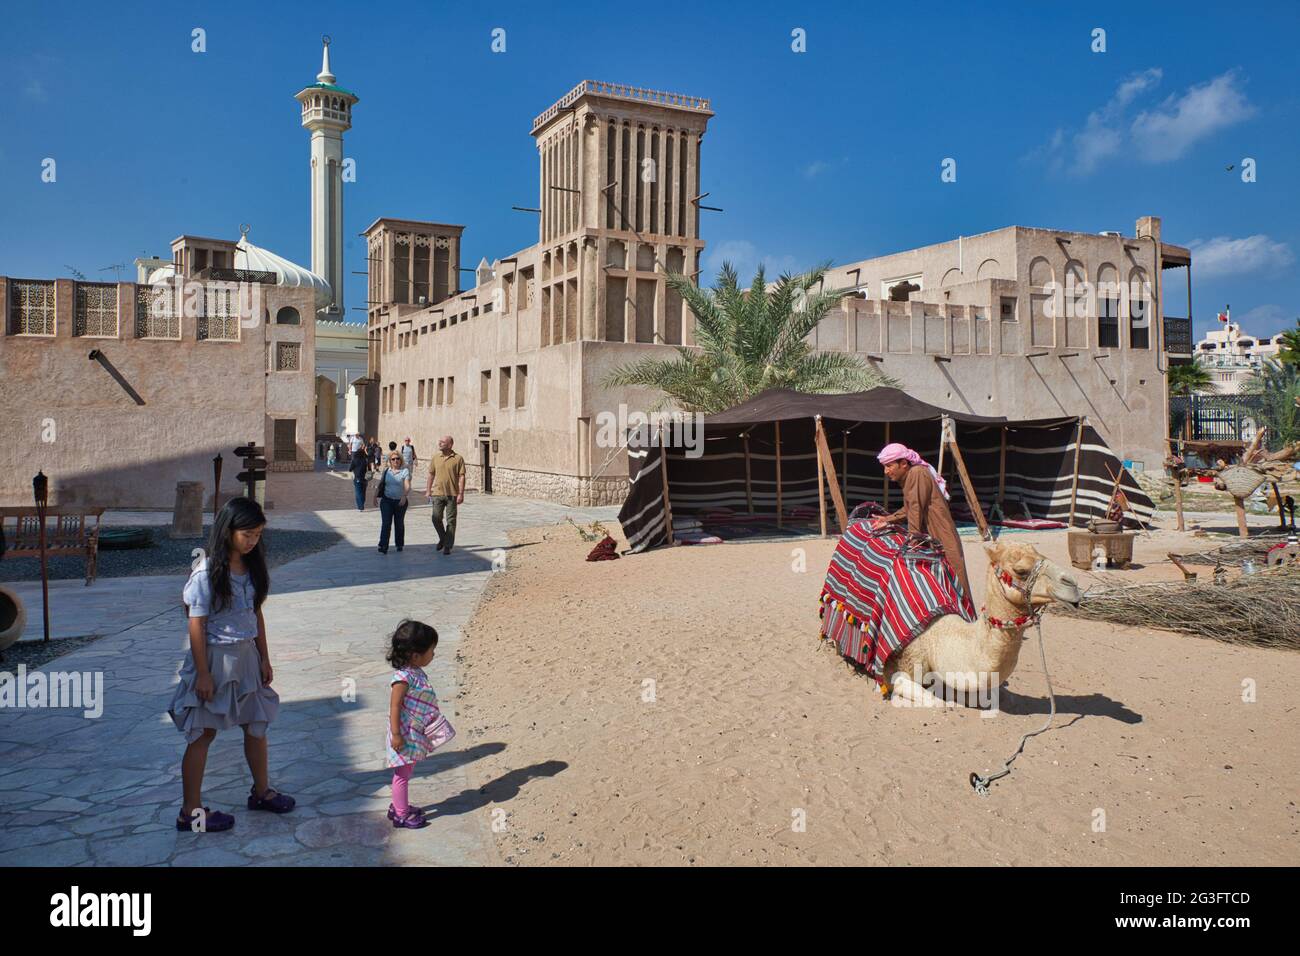 Una madre e una piccola figlia che guarda un cammello e un proprietario di cammello nel vecchio quartiere di Dubai, gli Emirati Arabi Uniti., con una casa con una torre del vento di raffreddamento appena oltre Foto Stock